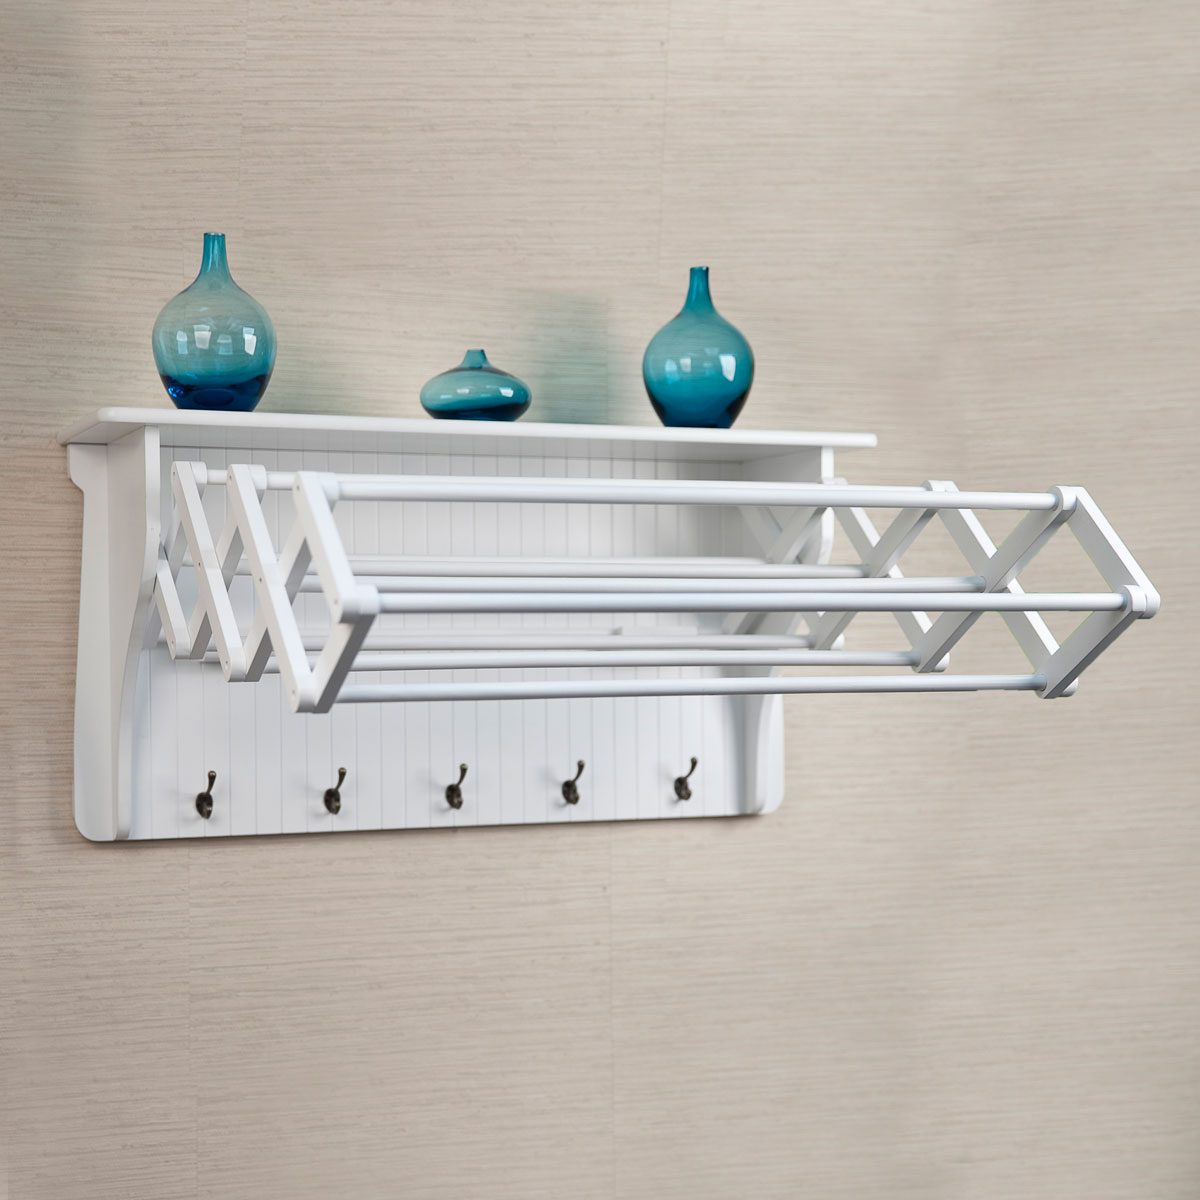 FROST Drying rack, indoor/outdoor, white - IKEA